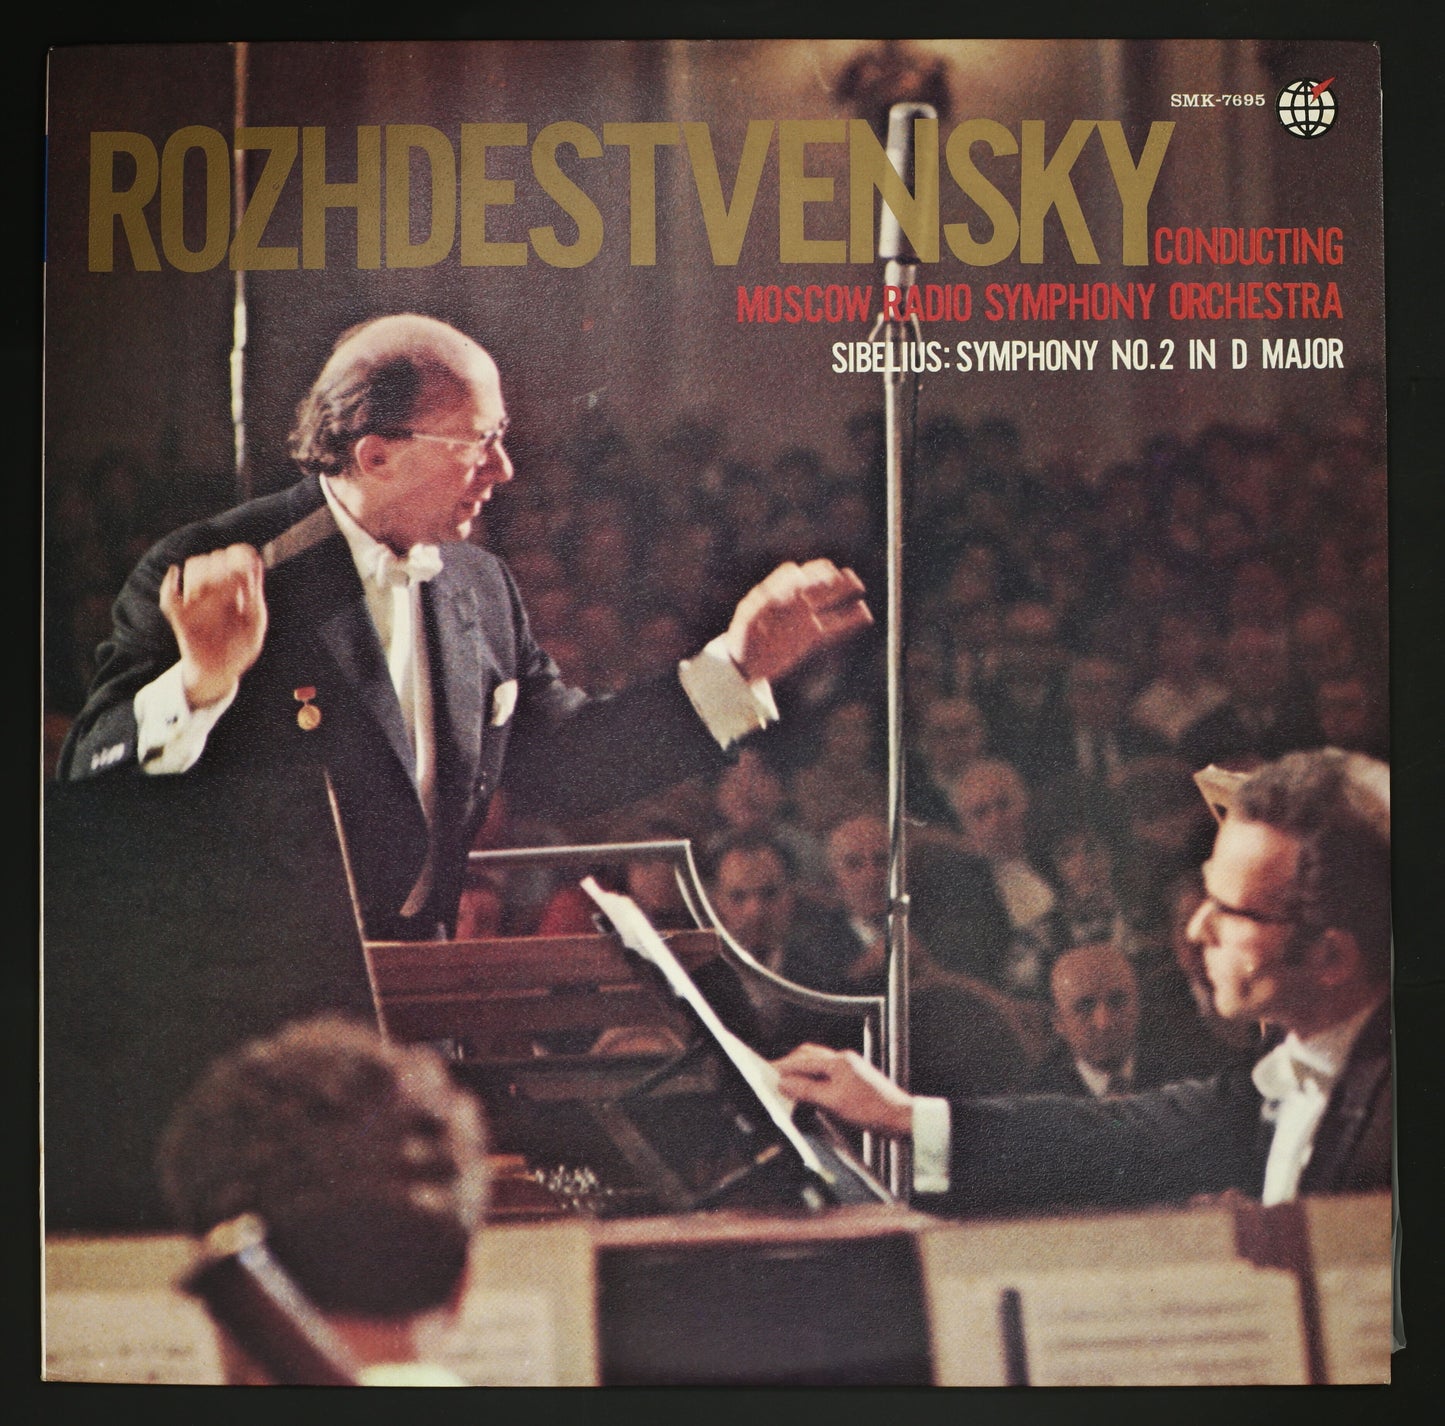 ロジェストヴェンスキー,モスクワ放送響 / シベリウス:交響曲第2番